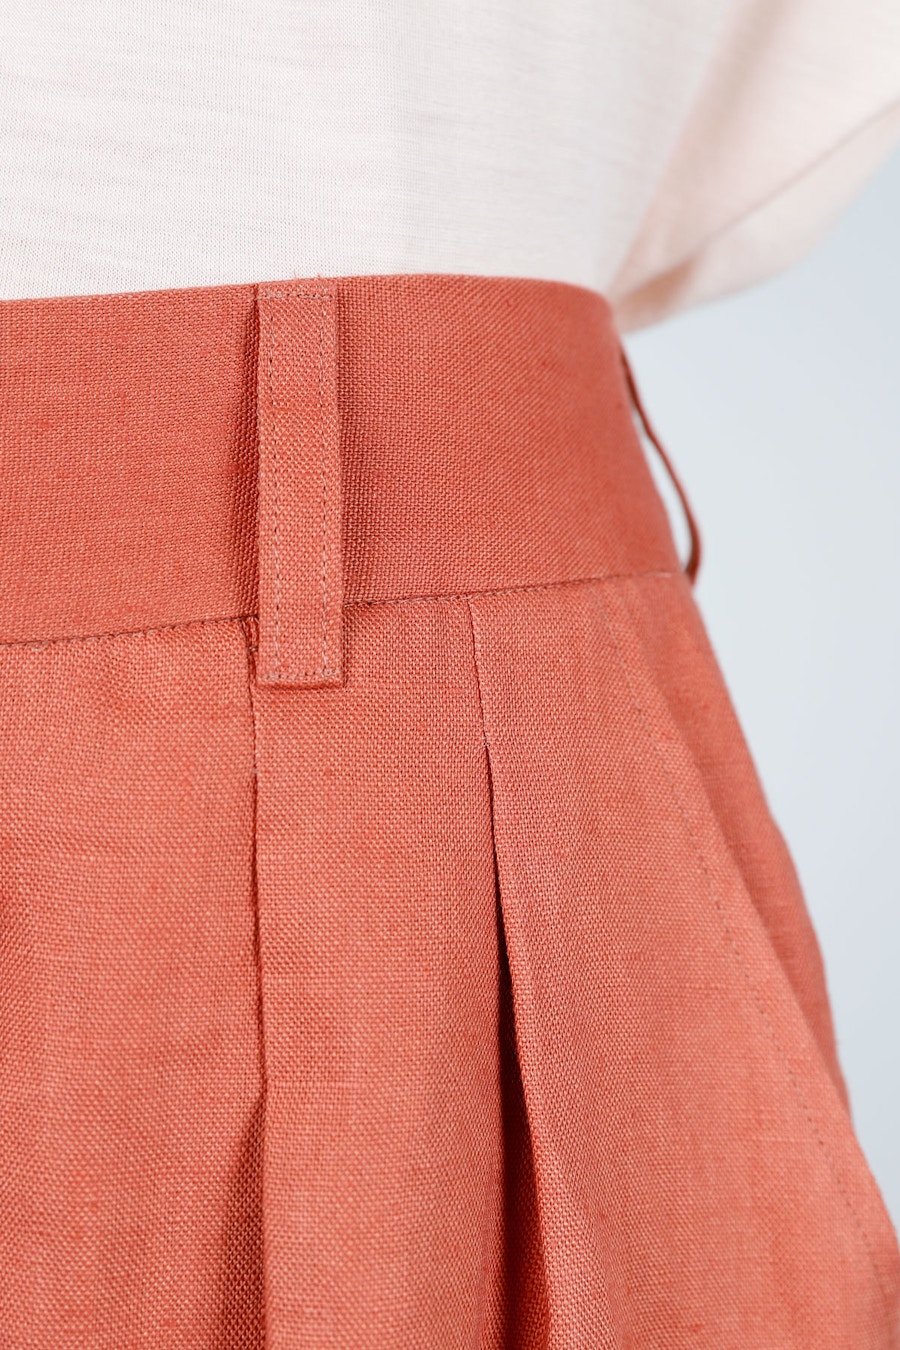 August skirt detail